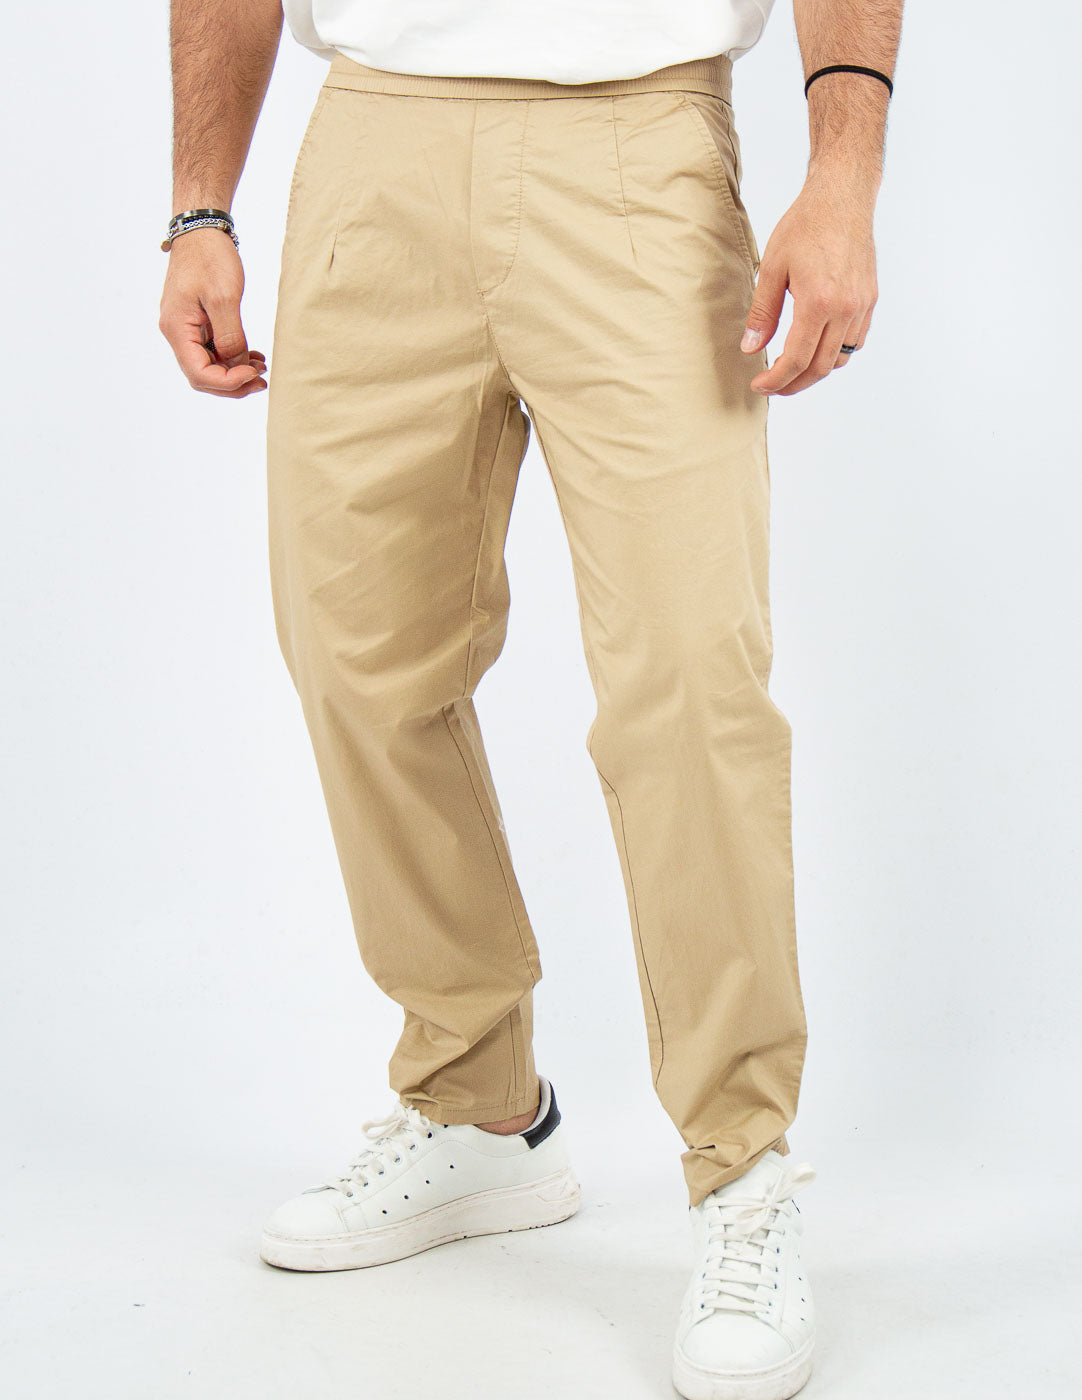 pantalone uomo in cotone con elastico